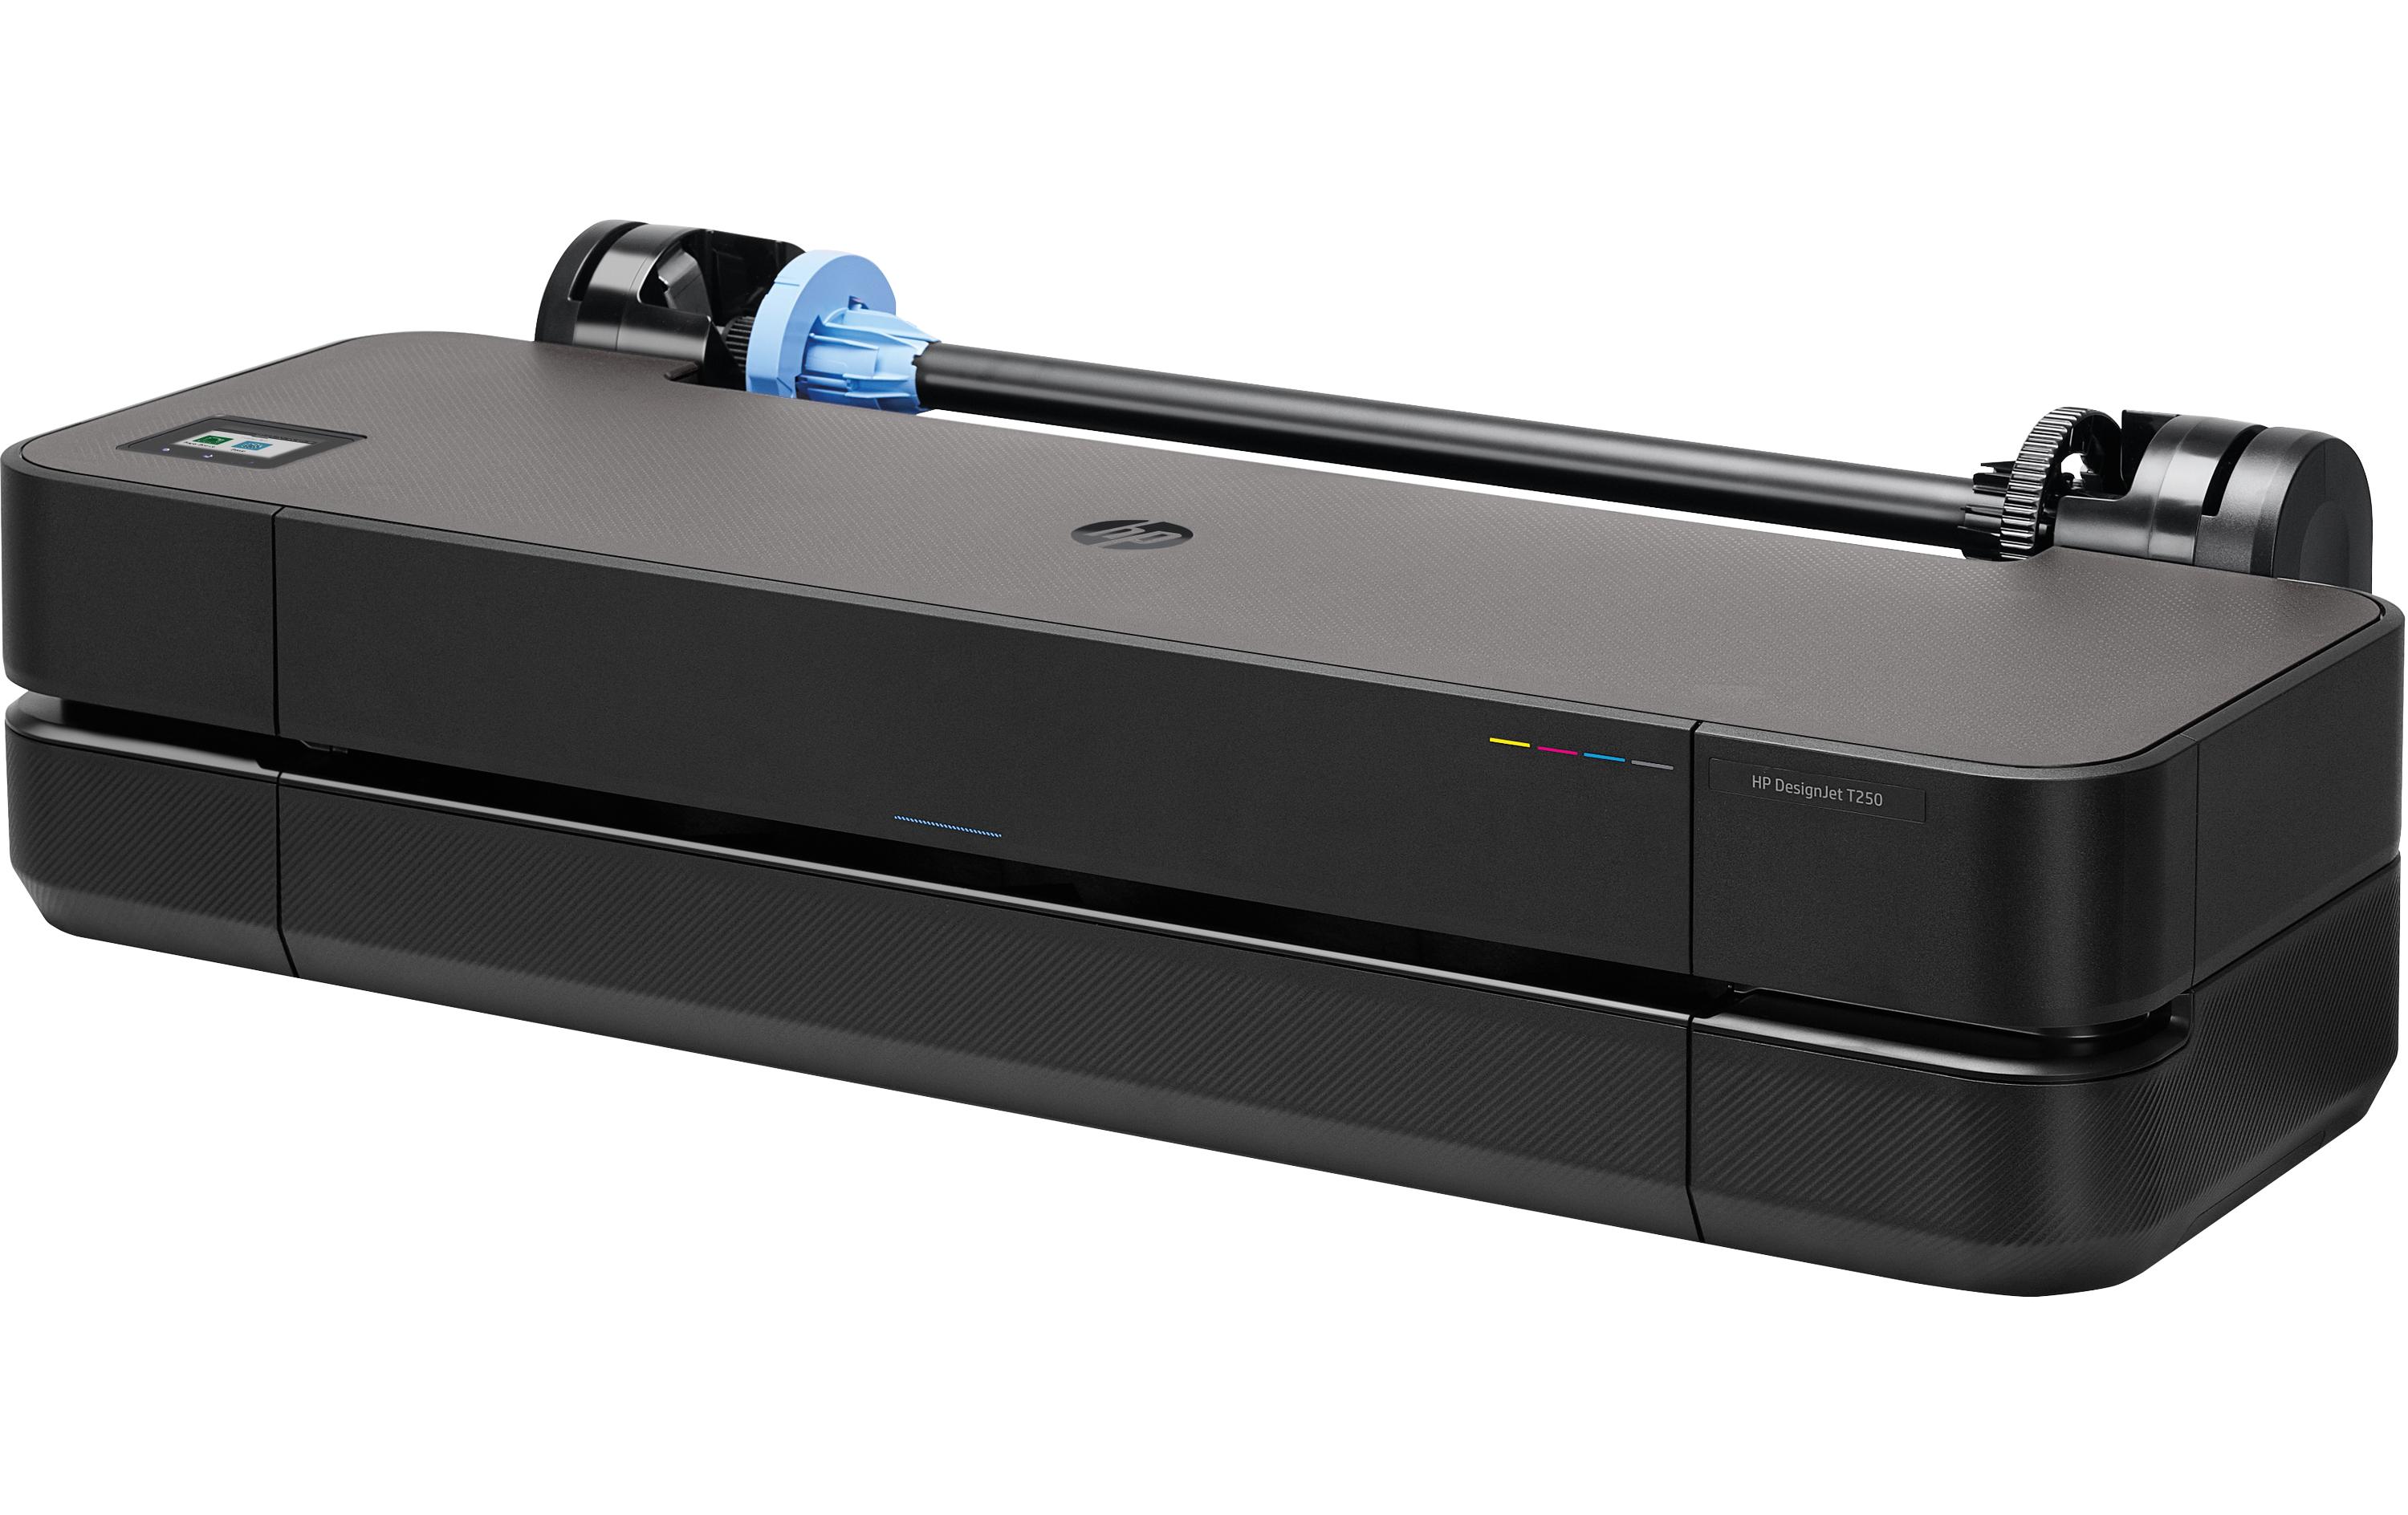 HP Grossformatdrucker DesignJet T250 - 24